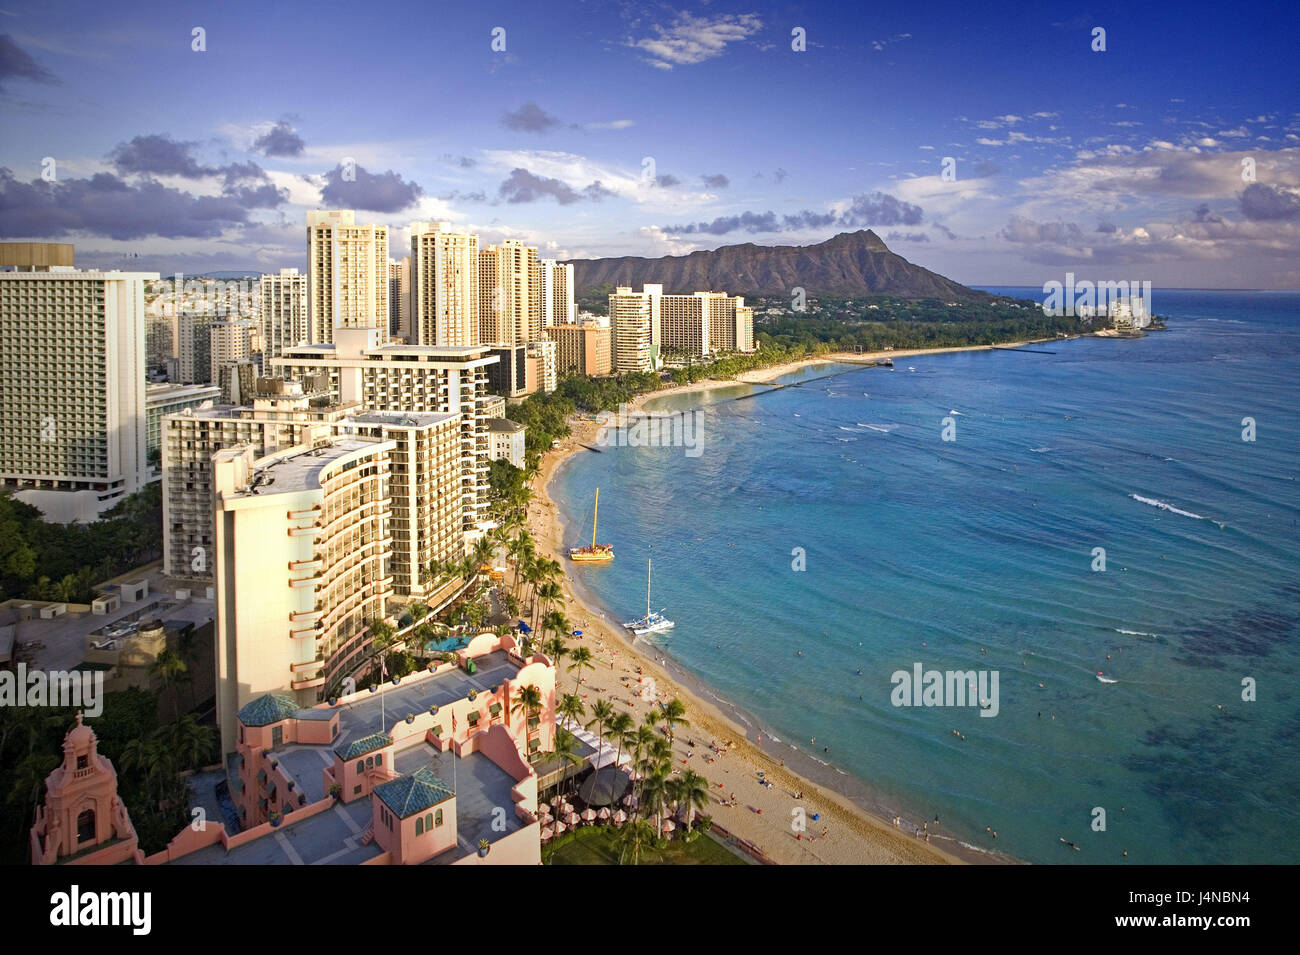 Les USA, Hawaii, Honolulu, Oahu Islande, Waikiki Beach, vue sur la plage, les îles Hawaii, destination, tourisme, grands immeubles, bâtiments de l'hôtel, mer, plage, montagne, Ciel, nuages, l'eau, turquoise, Banque D'Images